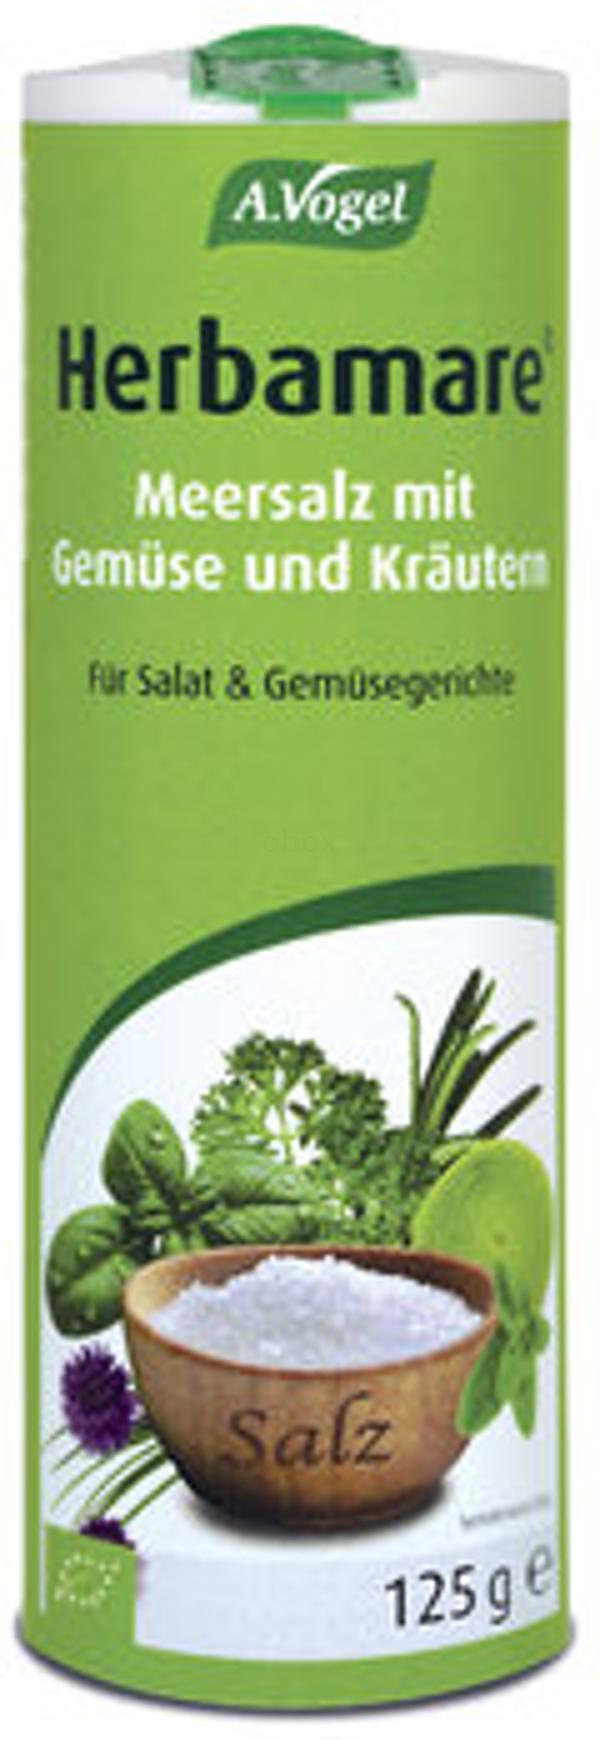 Produktfoto zu Meersalz mit Gemüse und Kräutern, 125 g